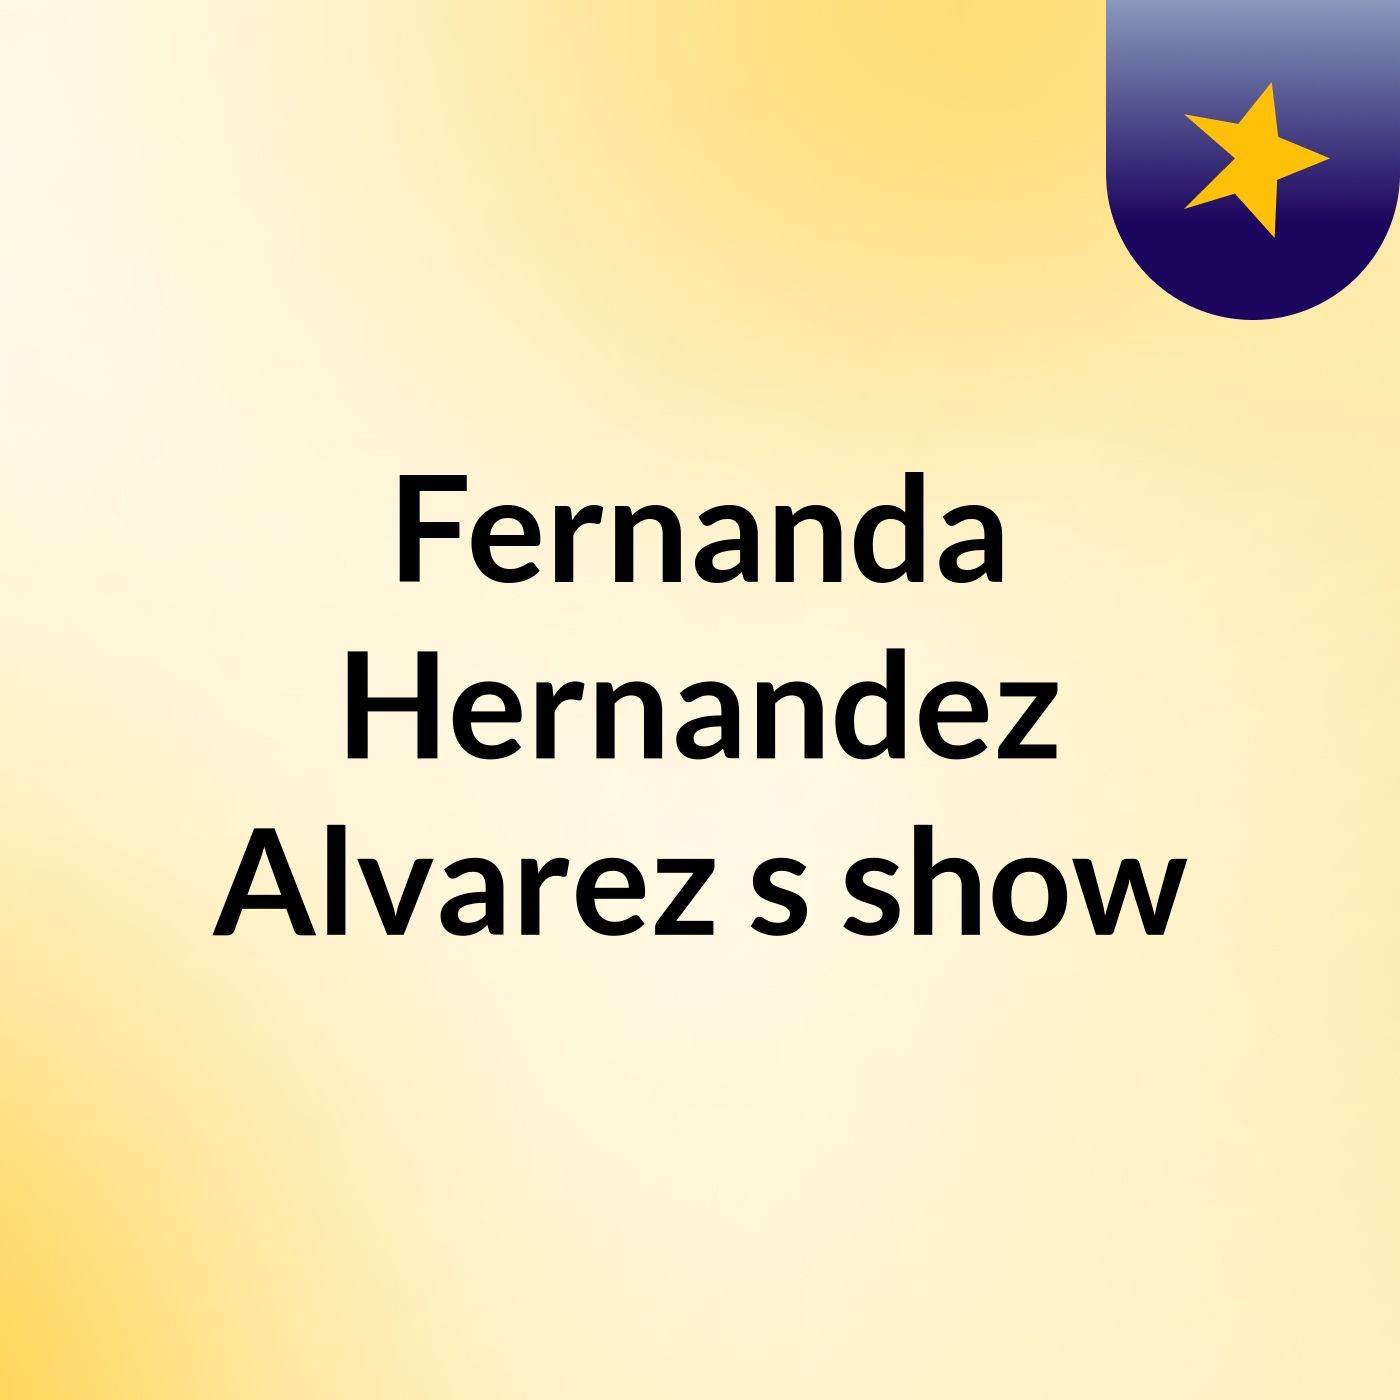 Fernanda Hernandez Alvarez's show